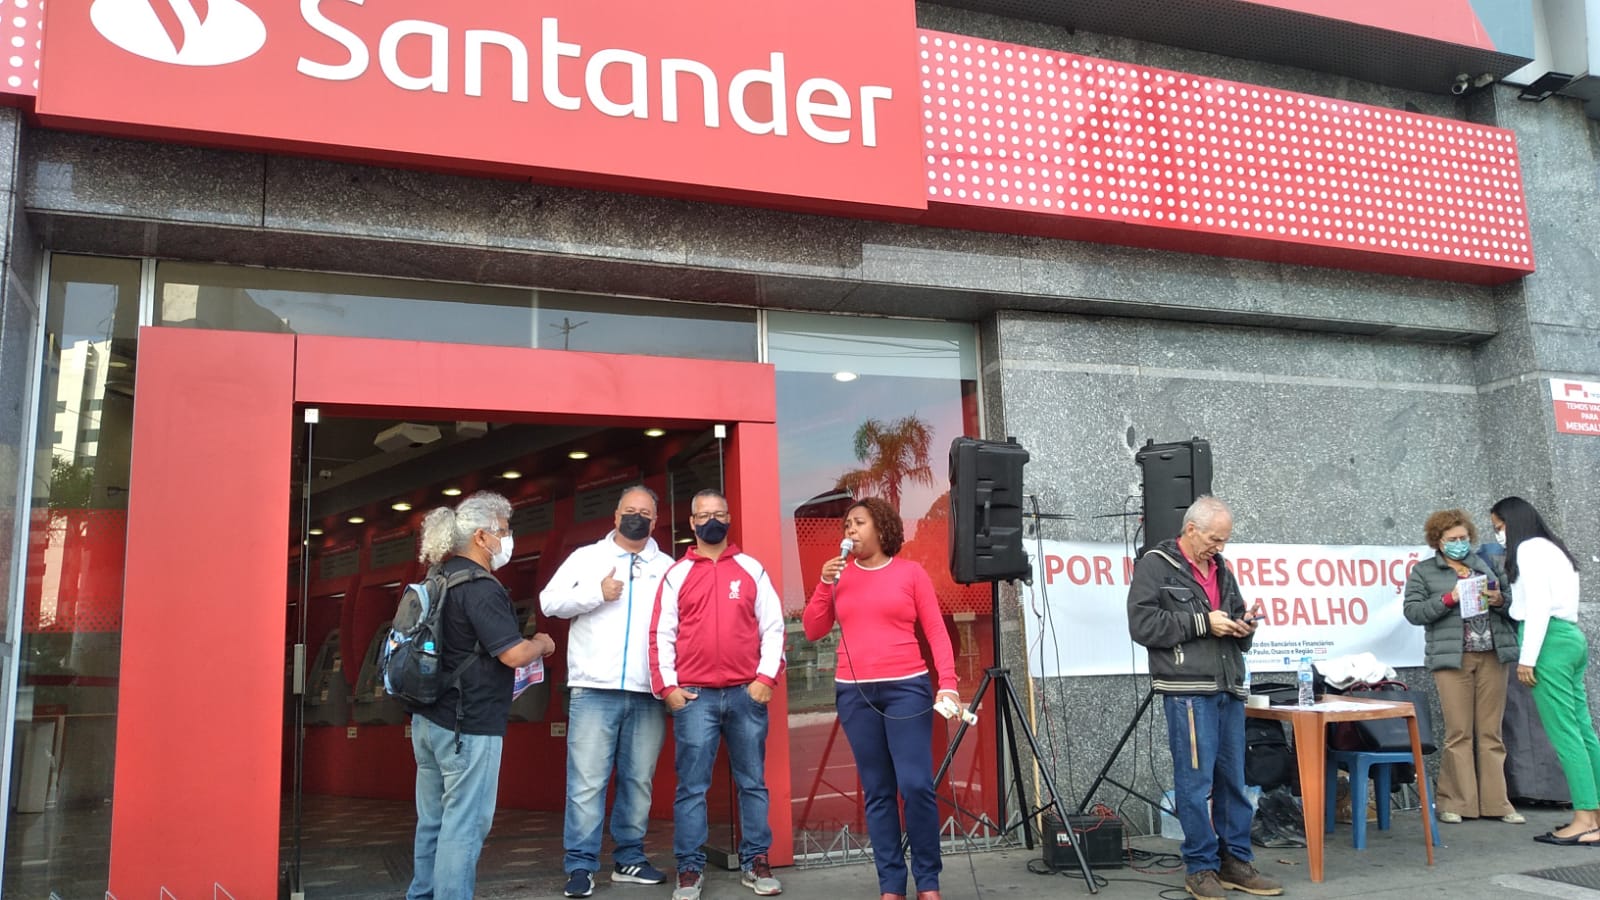 Protestos contra o Santander 27Jul (20)